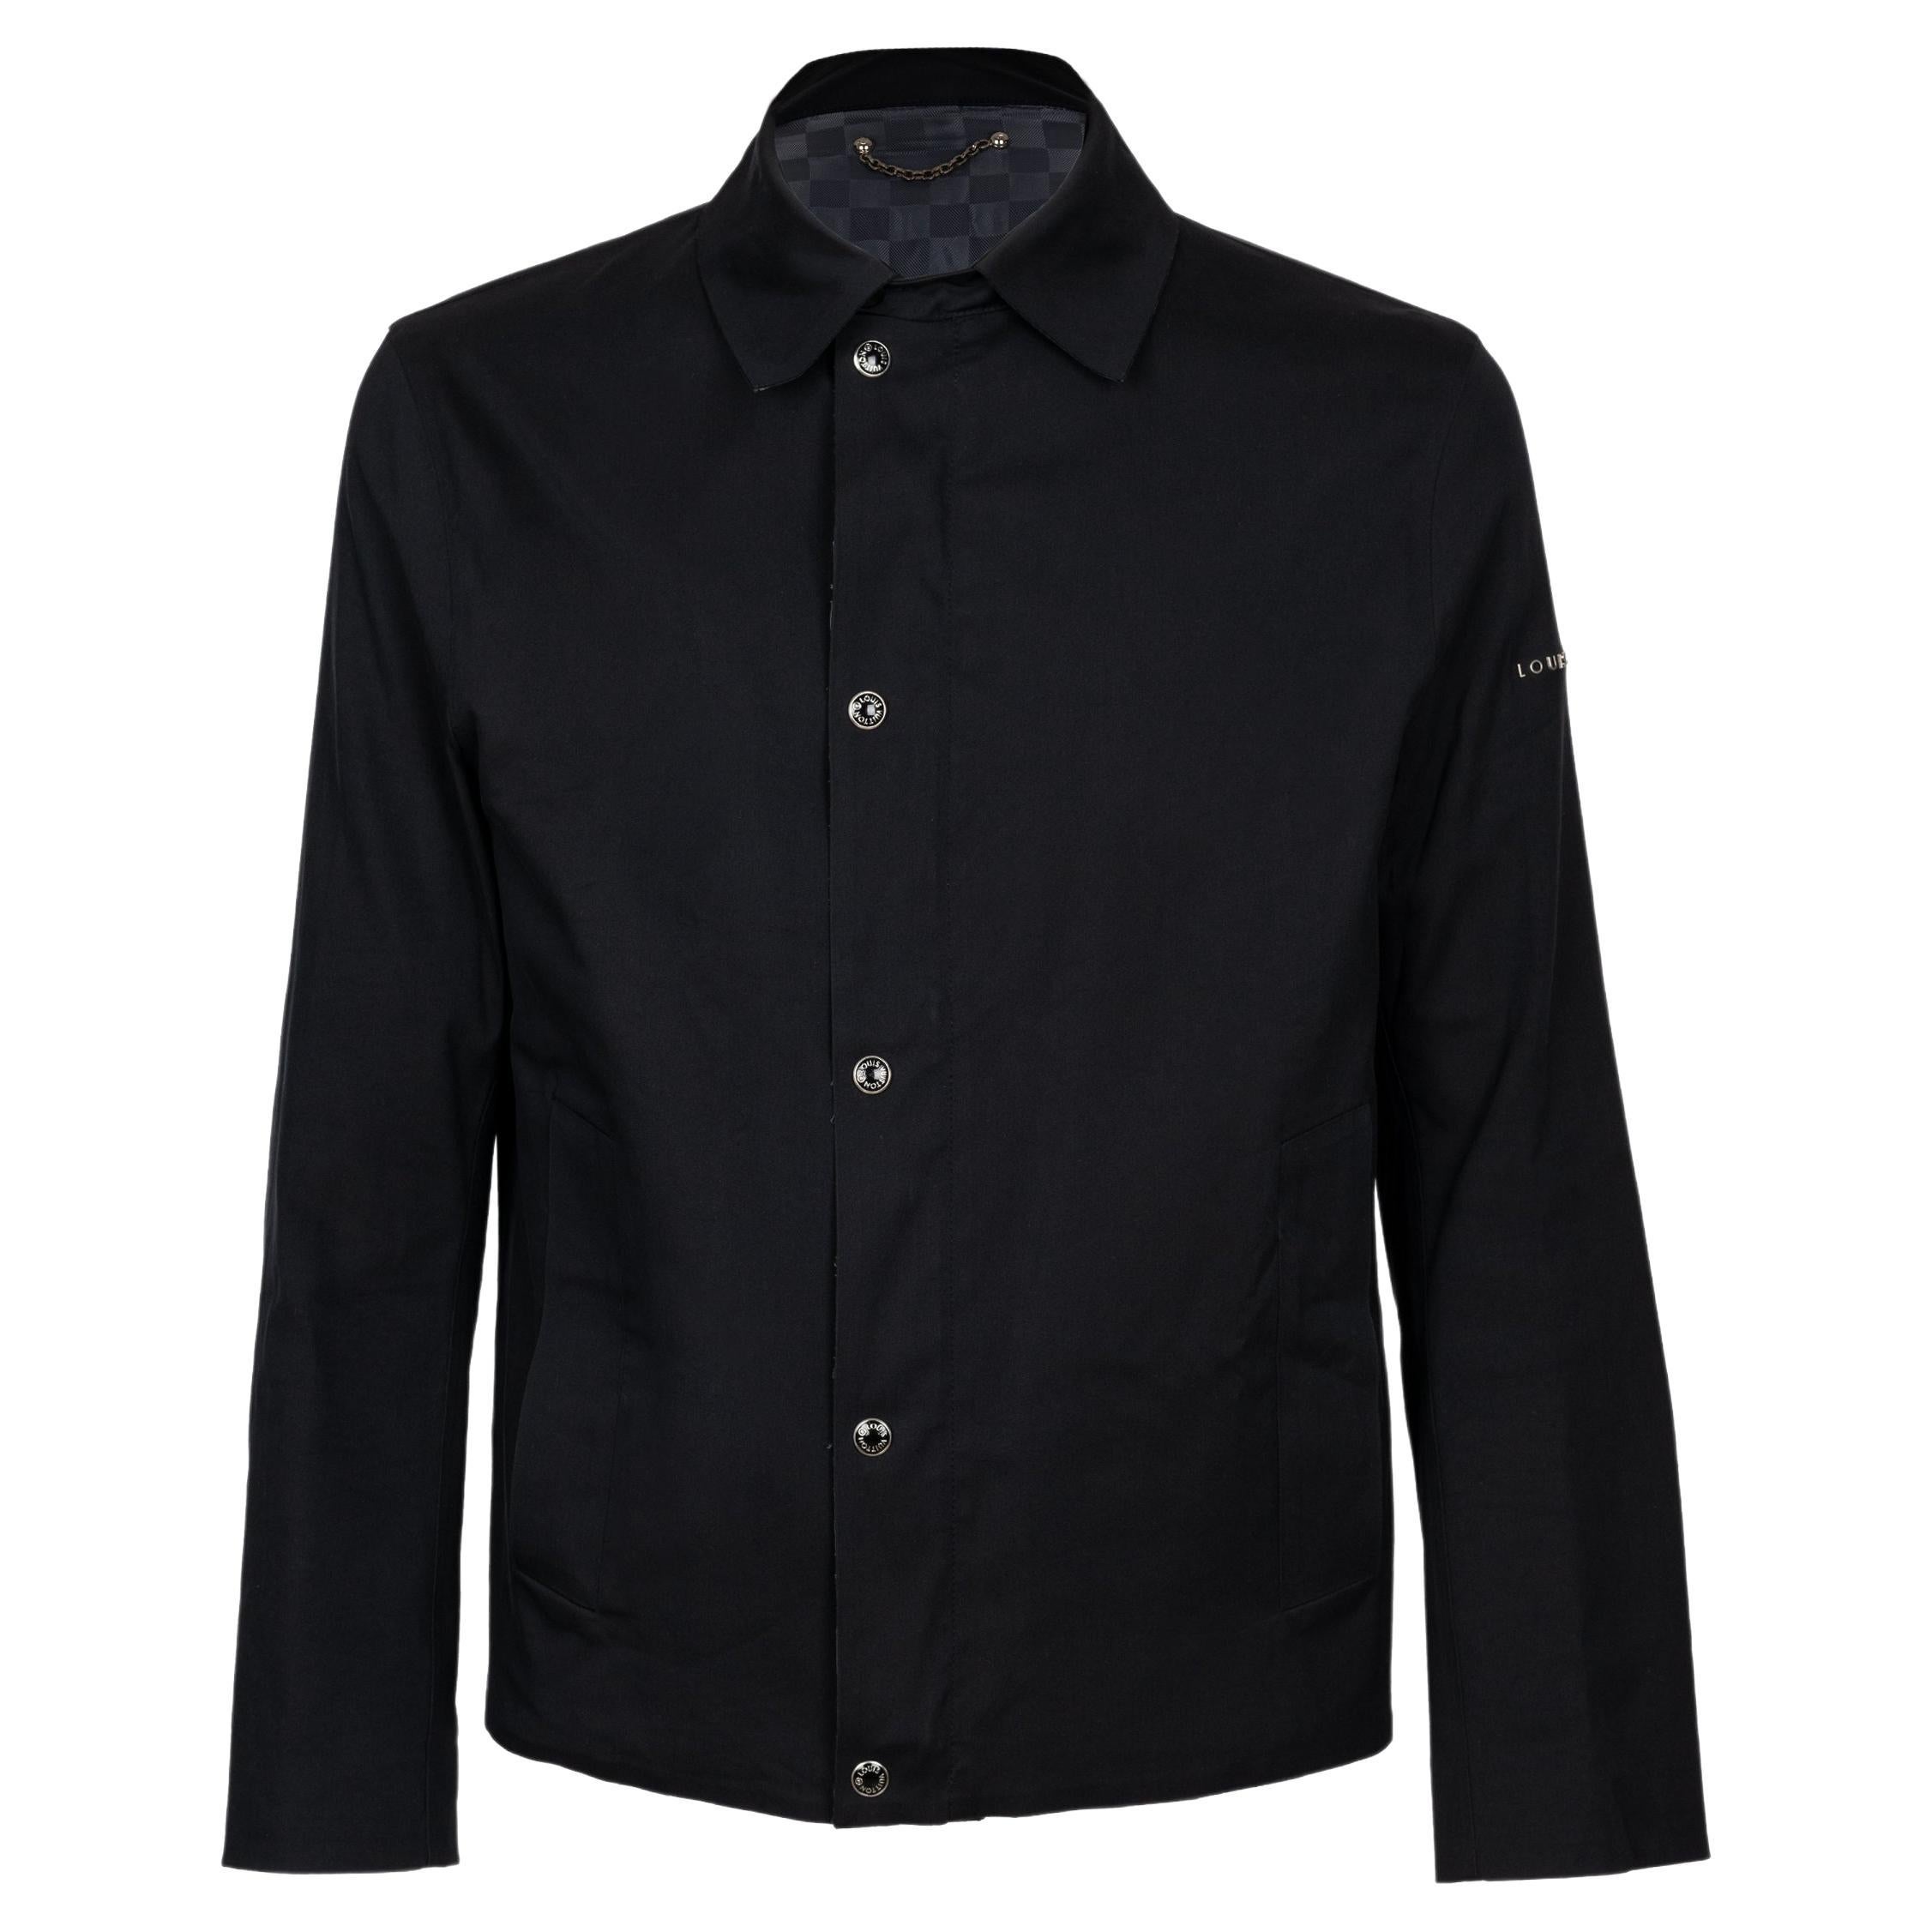 Louis Vuitton Lightweight & Shirt Jackets for Men - Poshmark